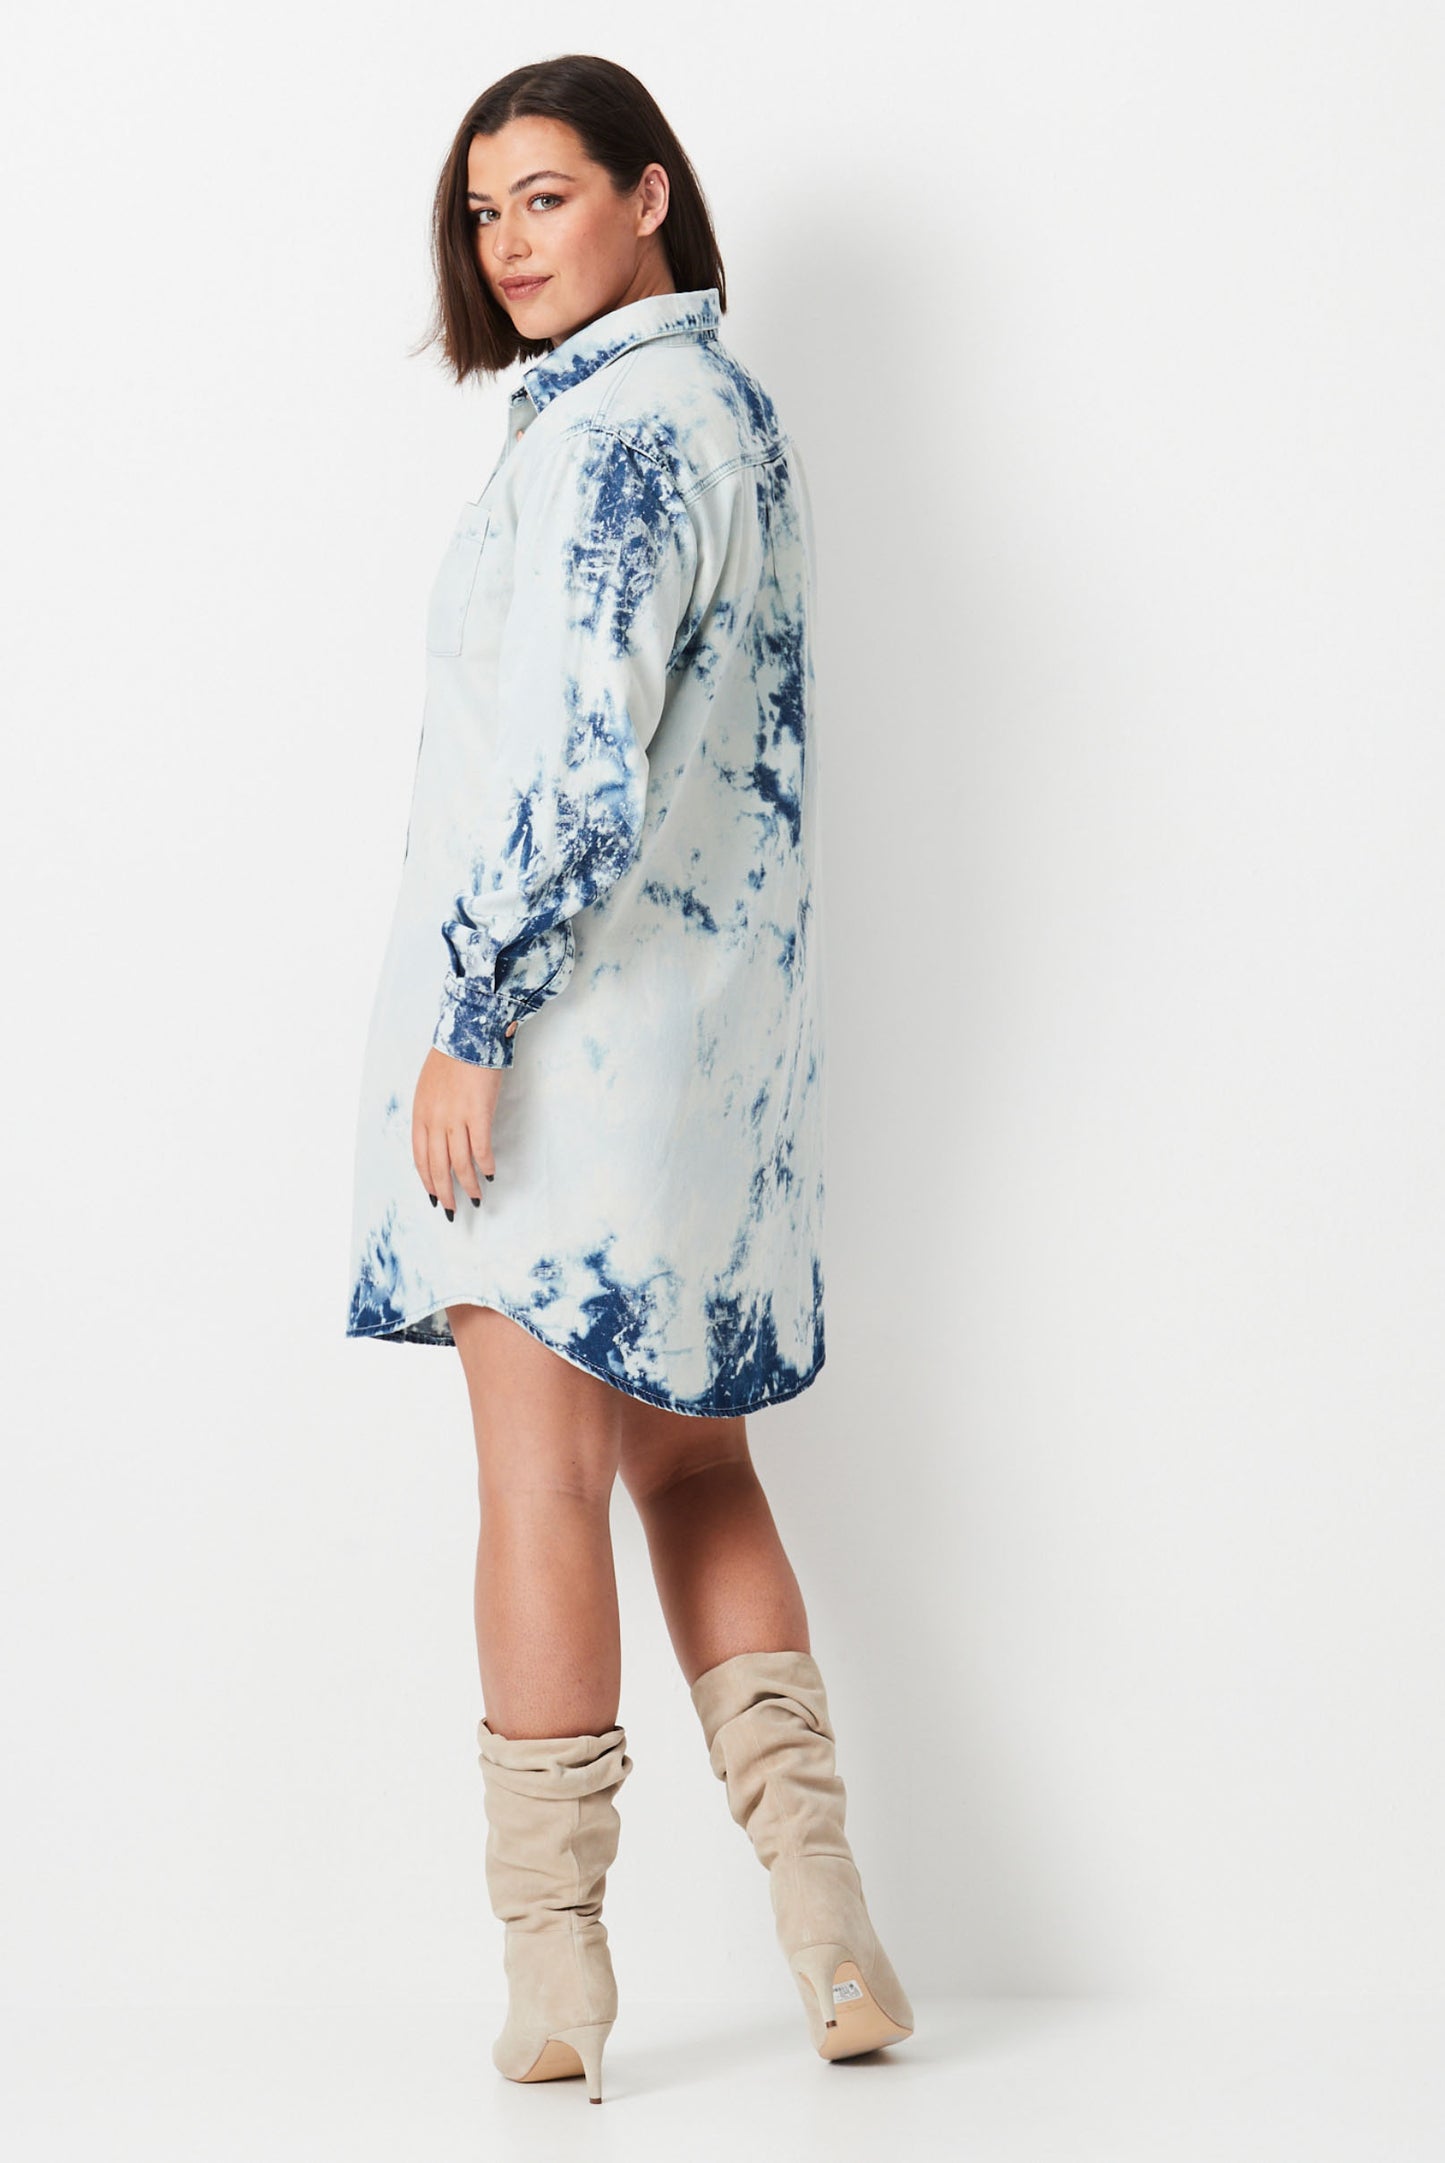 Model wears white and blue shibori tie dye plus size denim shirt dress 